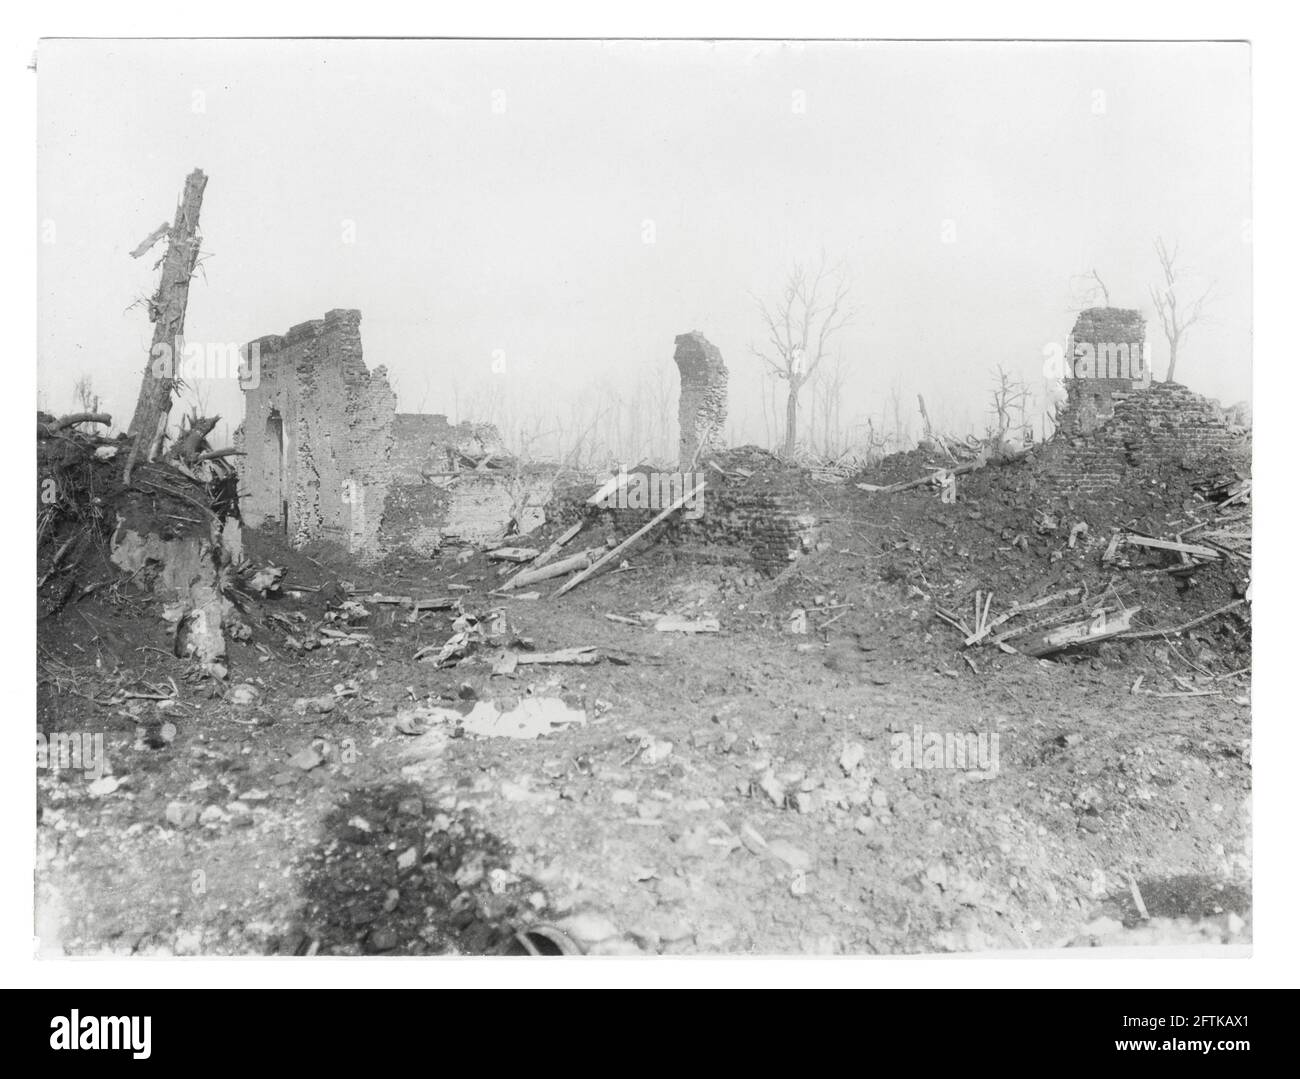 Première Guerre mondiale, première Guerre mondiale, Front occidental - scène de ruines au Barque, près de Baupaume, pas-de-Calais, hauts-de-France, France Banque D'Images